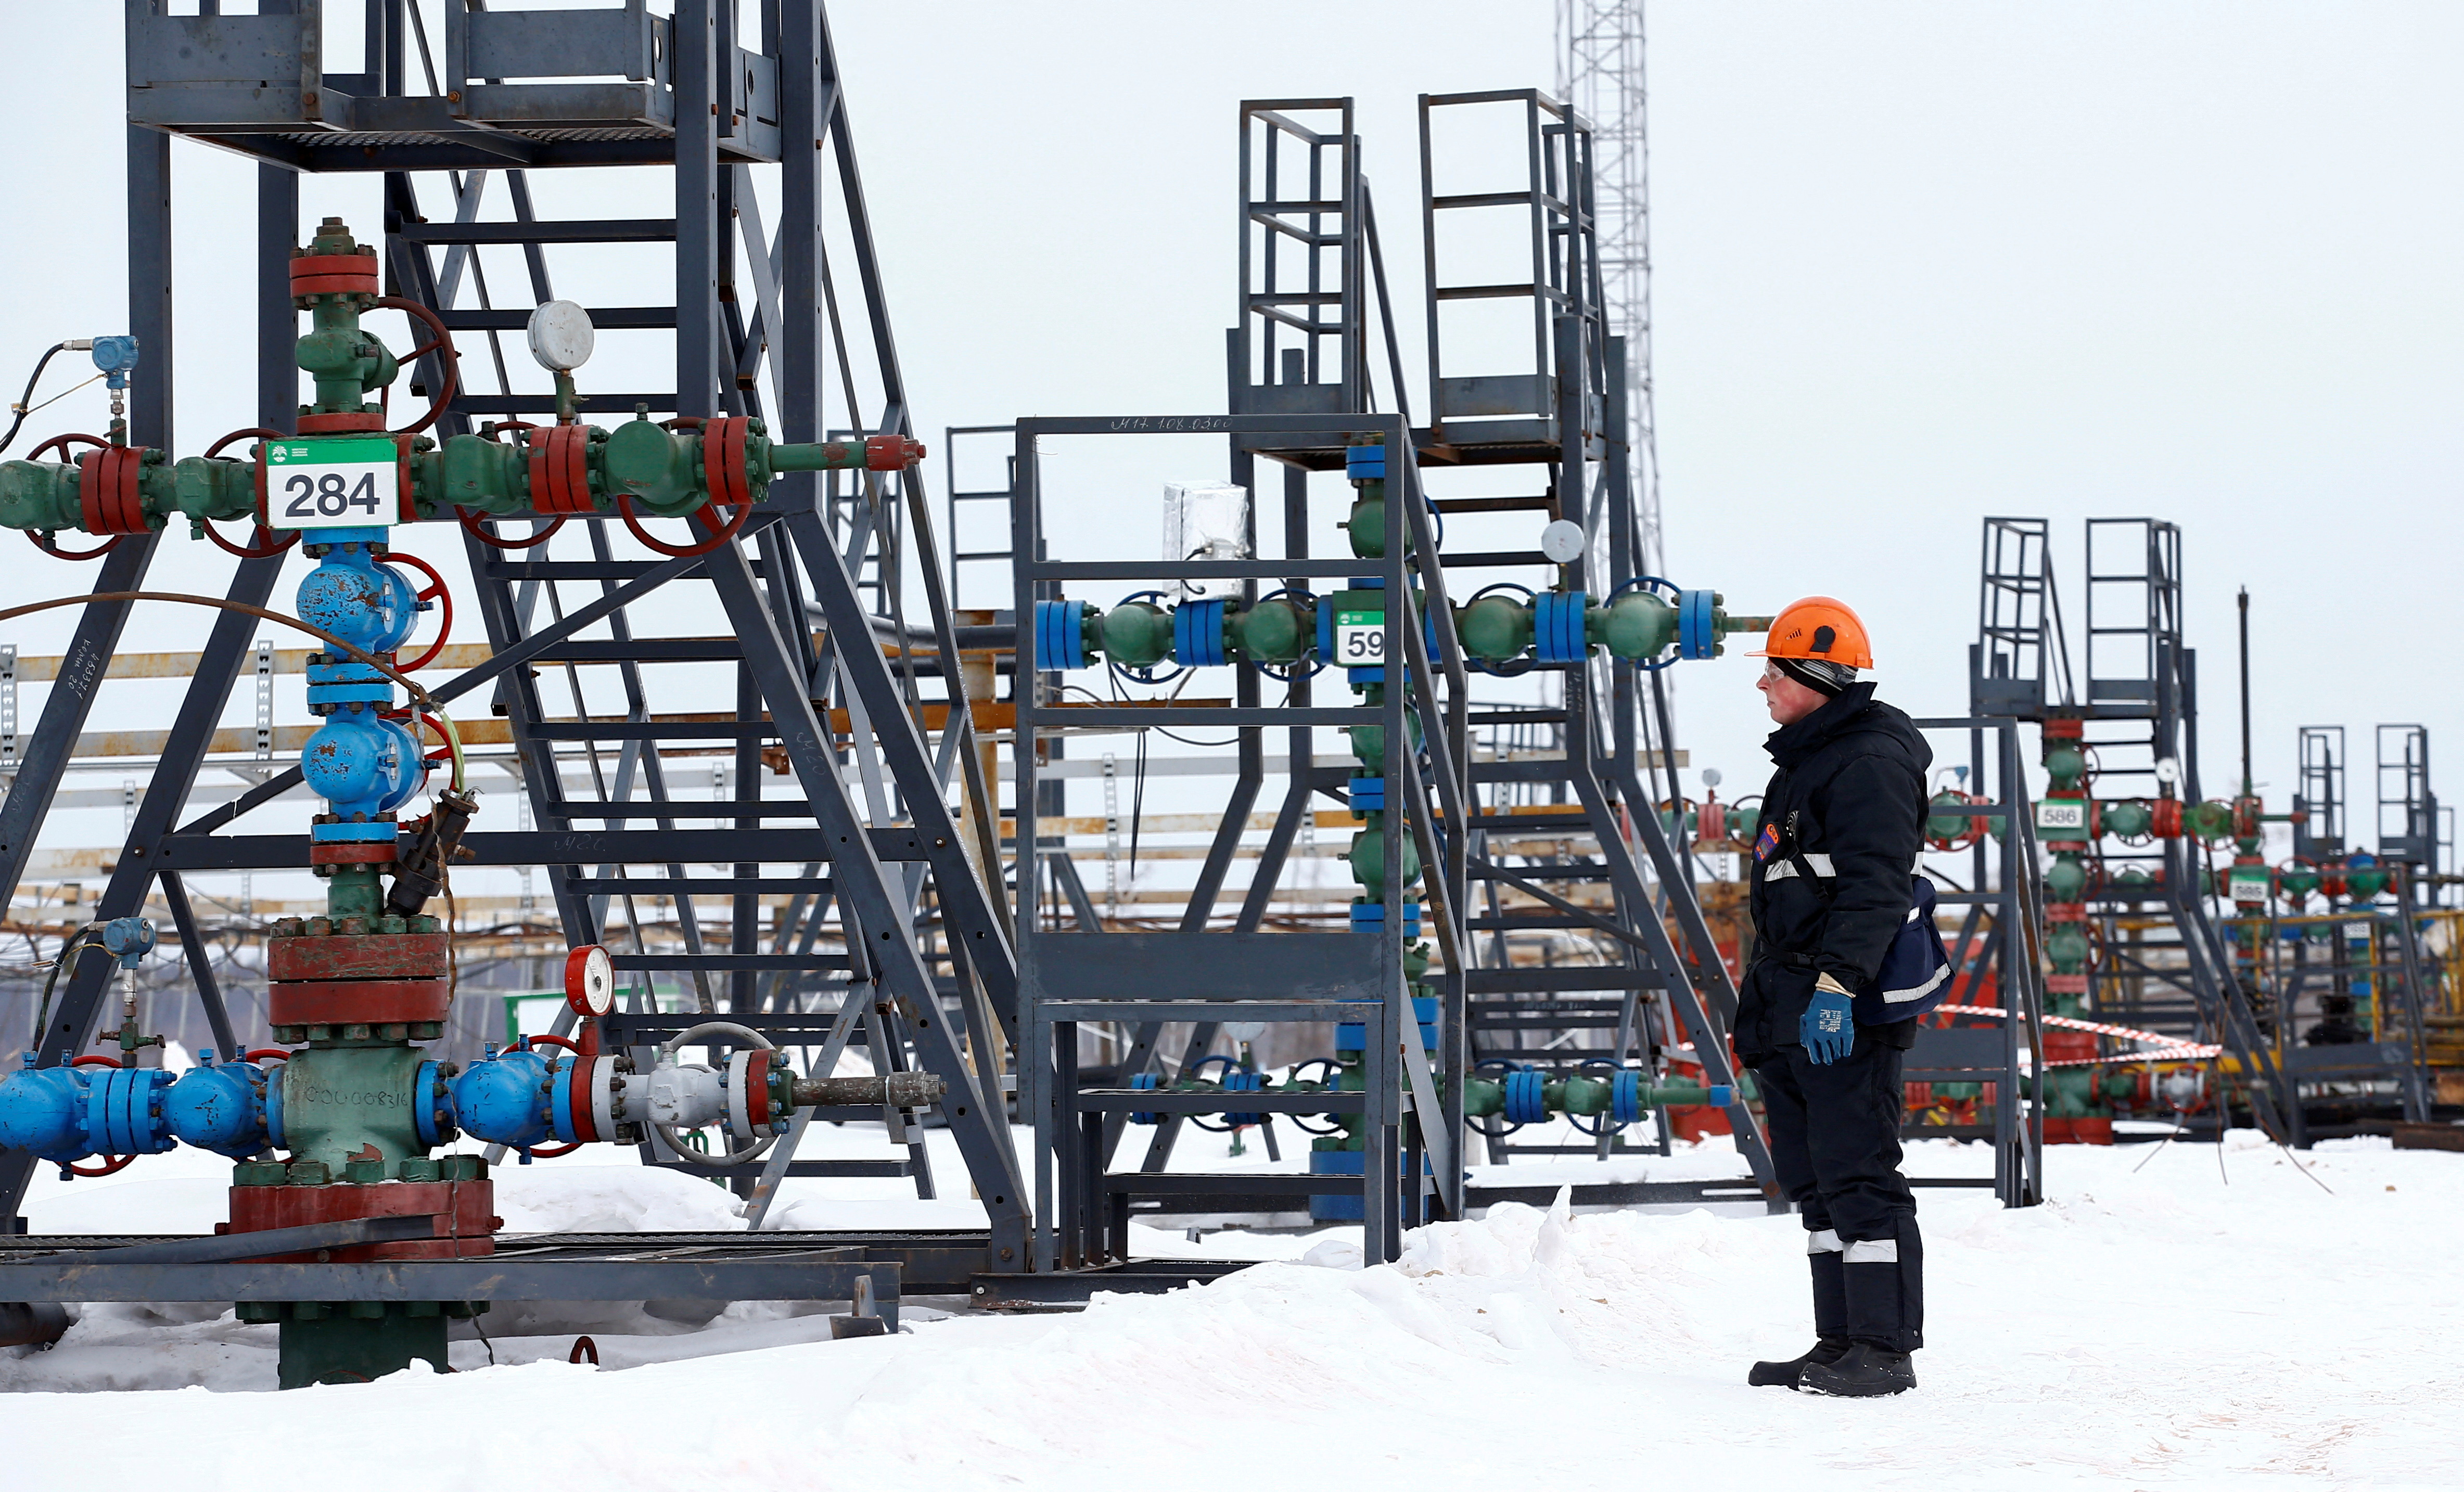 An employee inspects a well head in the Irkutsk Oil Company-owned Yarakta Oil Field in Irkutsk Region